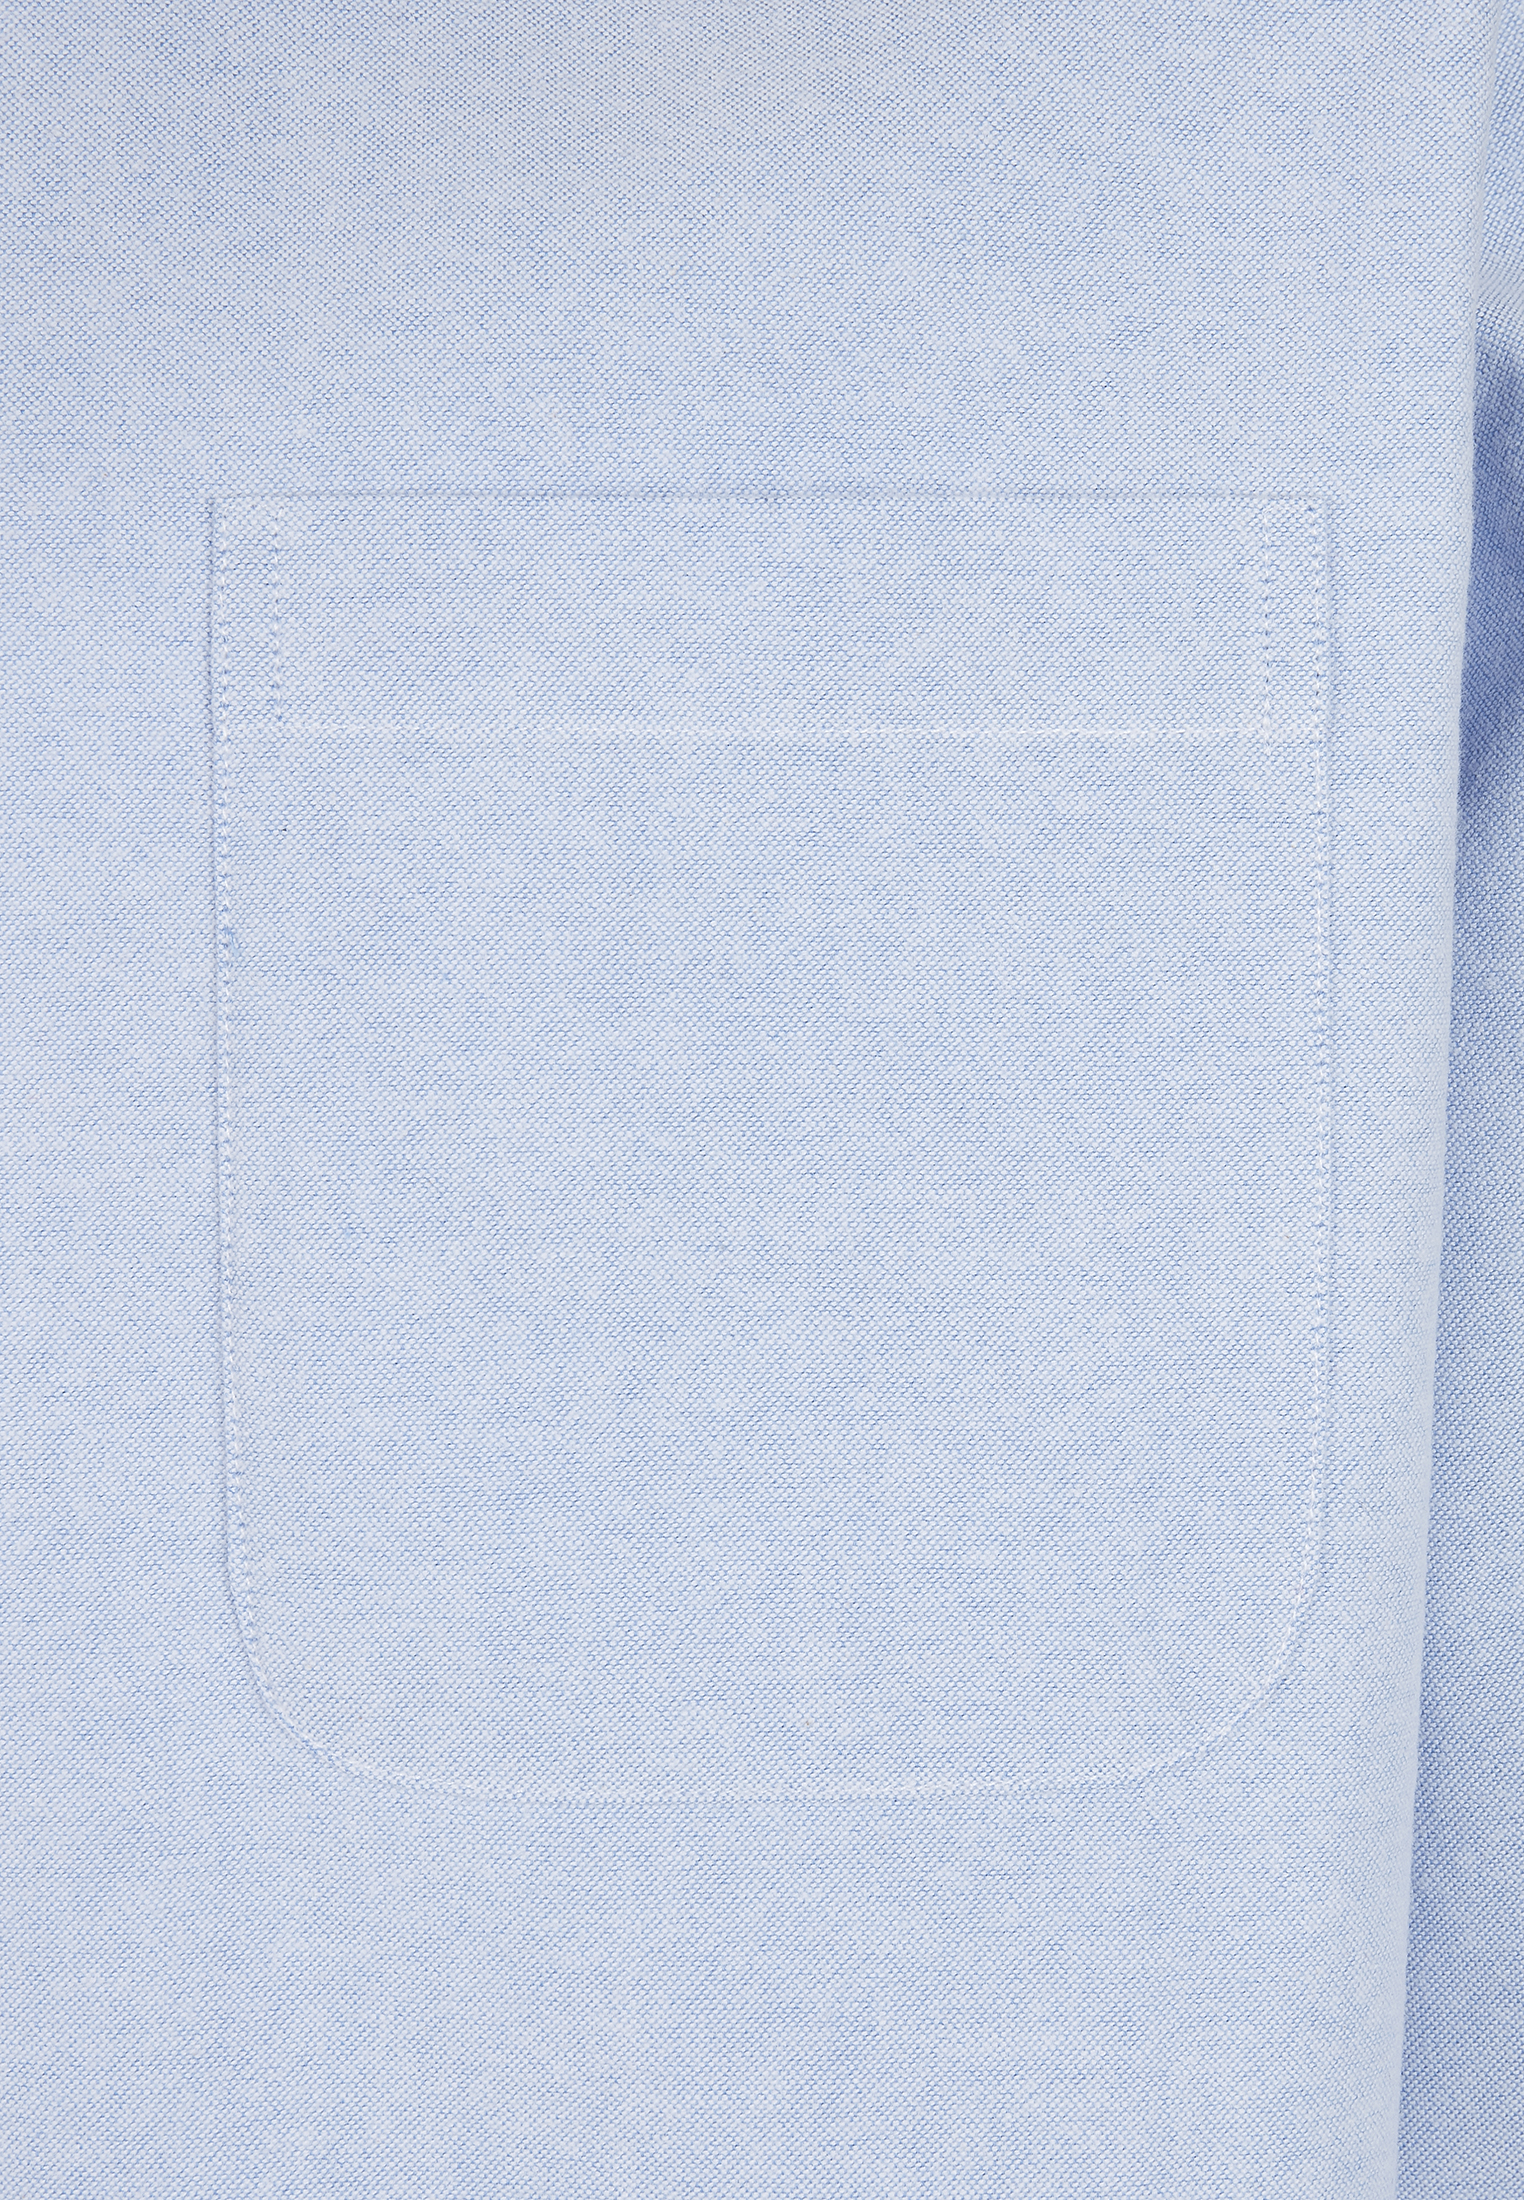 Hemden Basic Oxford Shirt in Farbe blue/wht